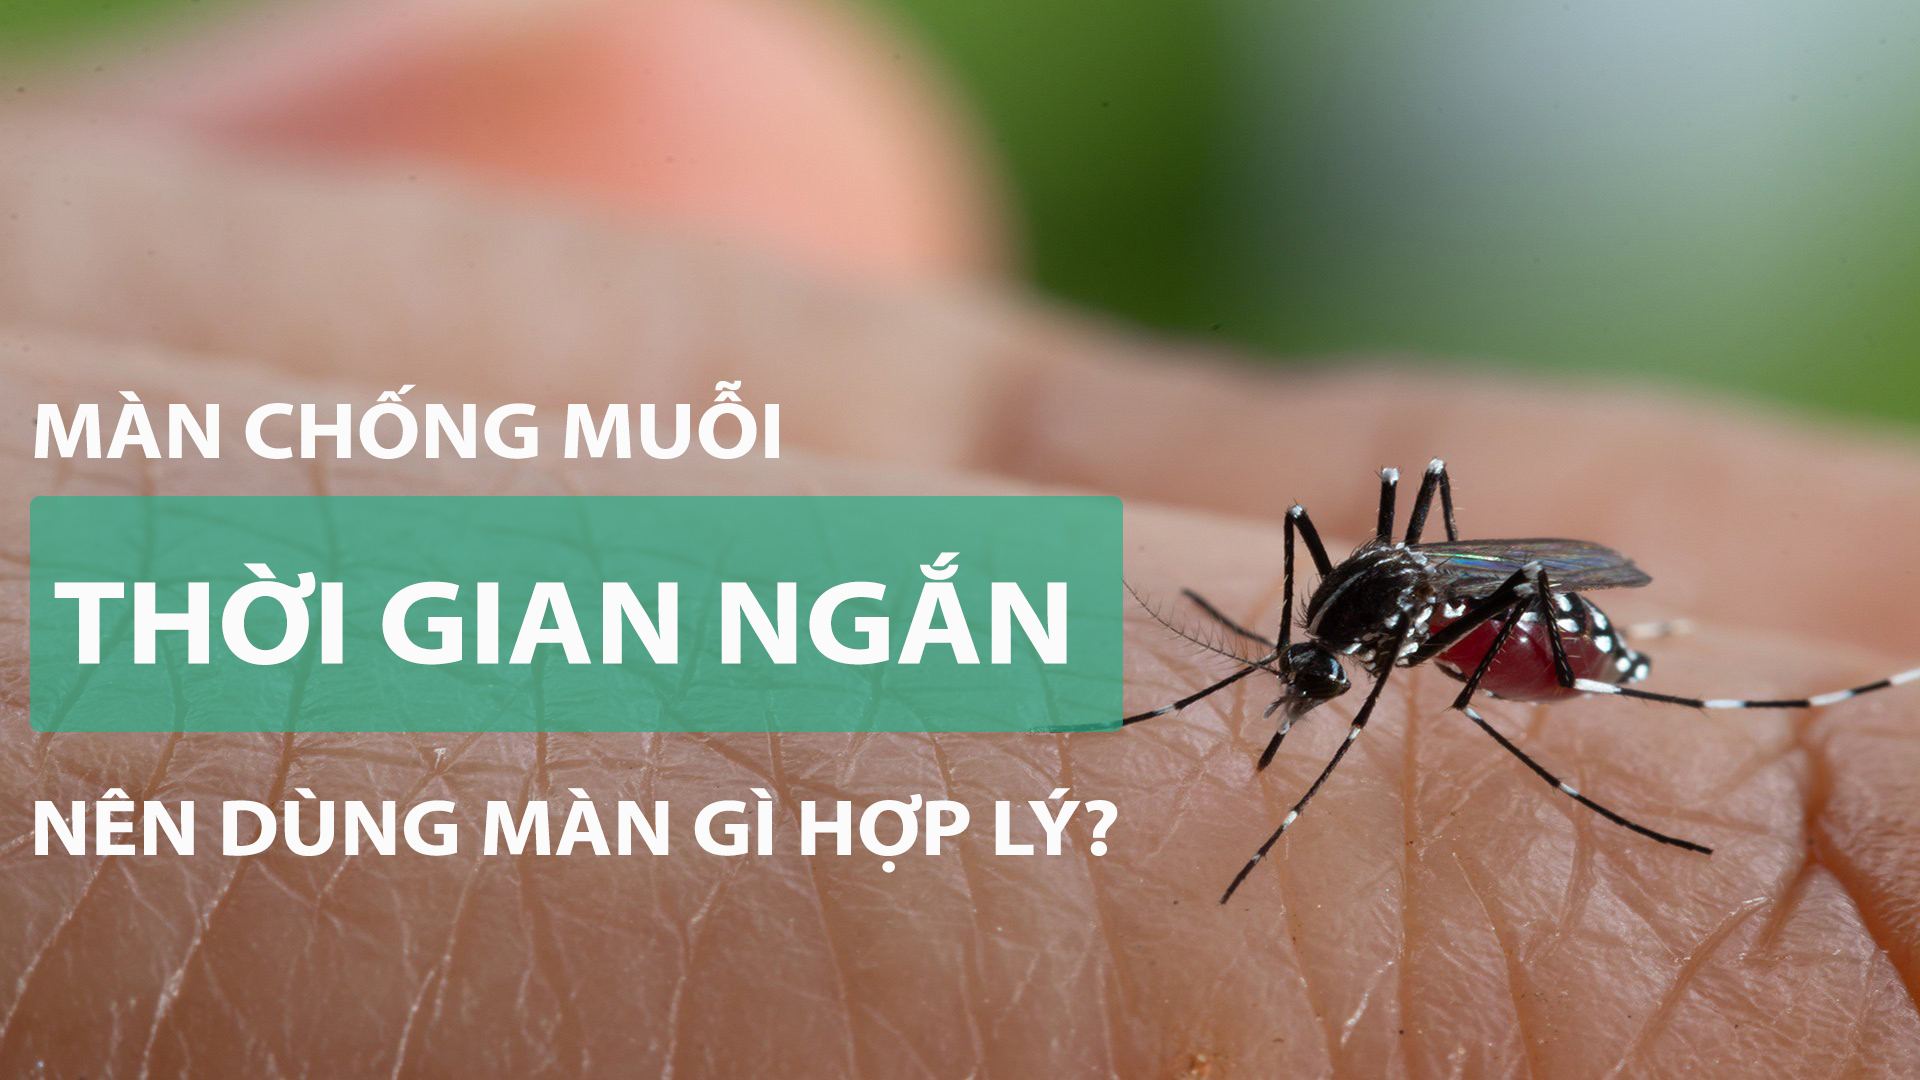 Mua màn gì để chống muỗi trong thời gian ngắn?